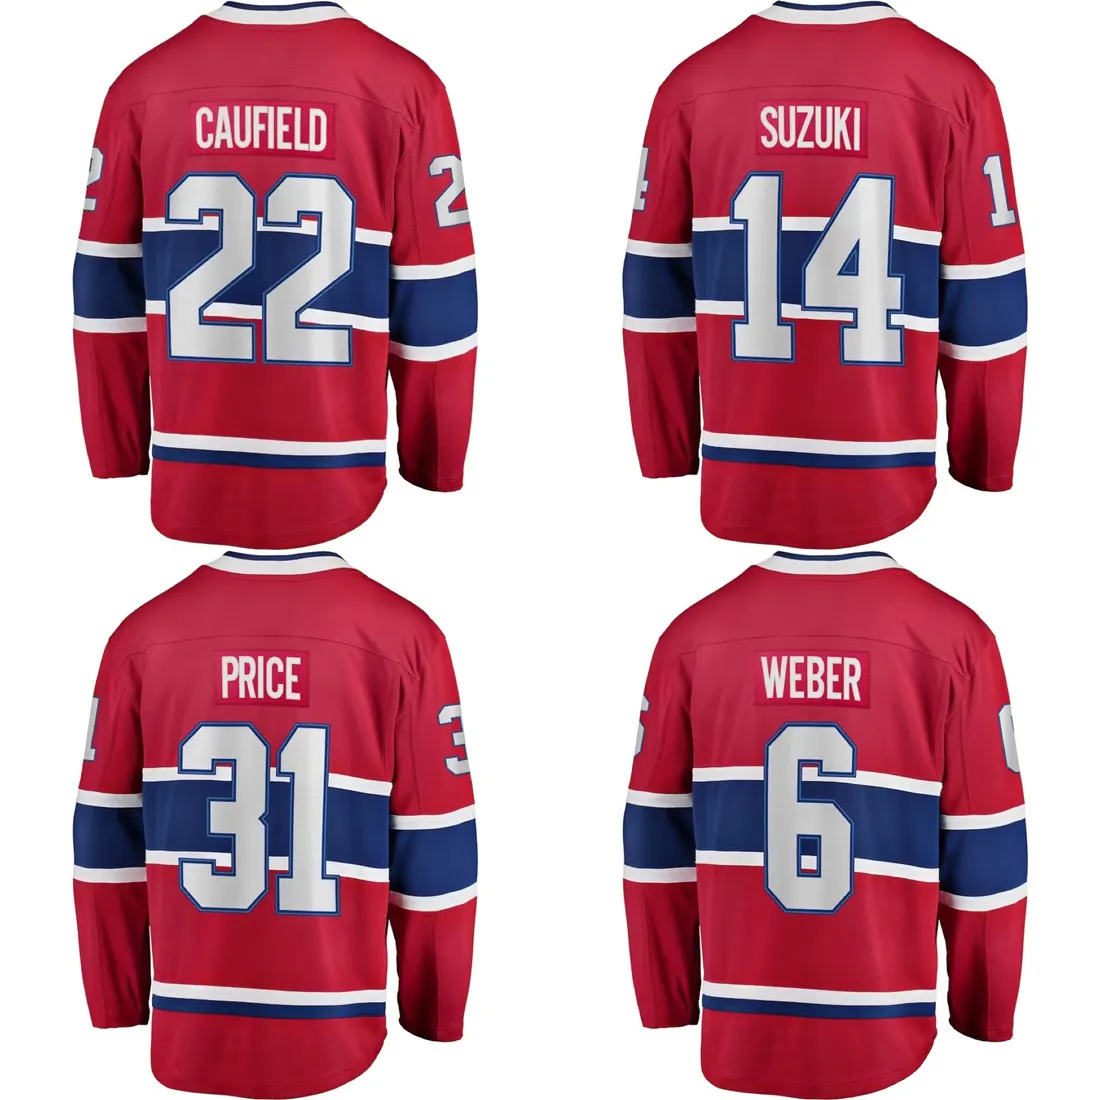 เสื้อกีฬาฮอกกี้น้ำแข็งที่กำหนดเองในเมืองมอนทรีอัลเย็บปักลายสำหรับผู้ชายชุดแคนาดาสีแดง #22 Caufield #31 Price # Weber